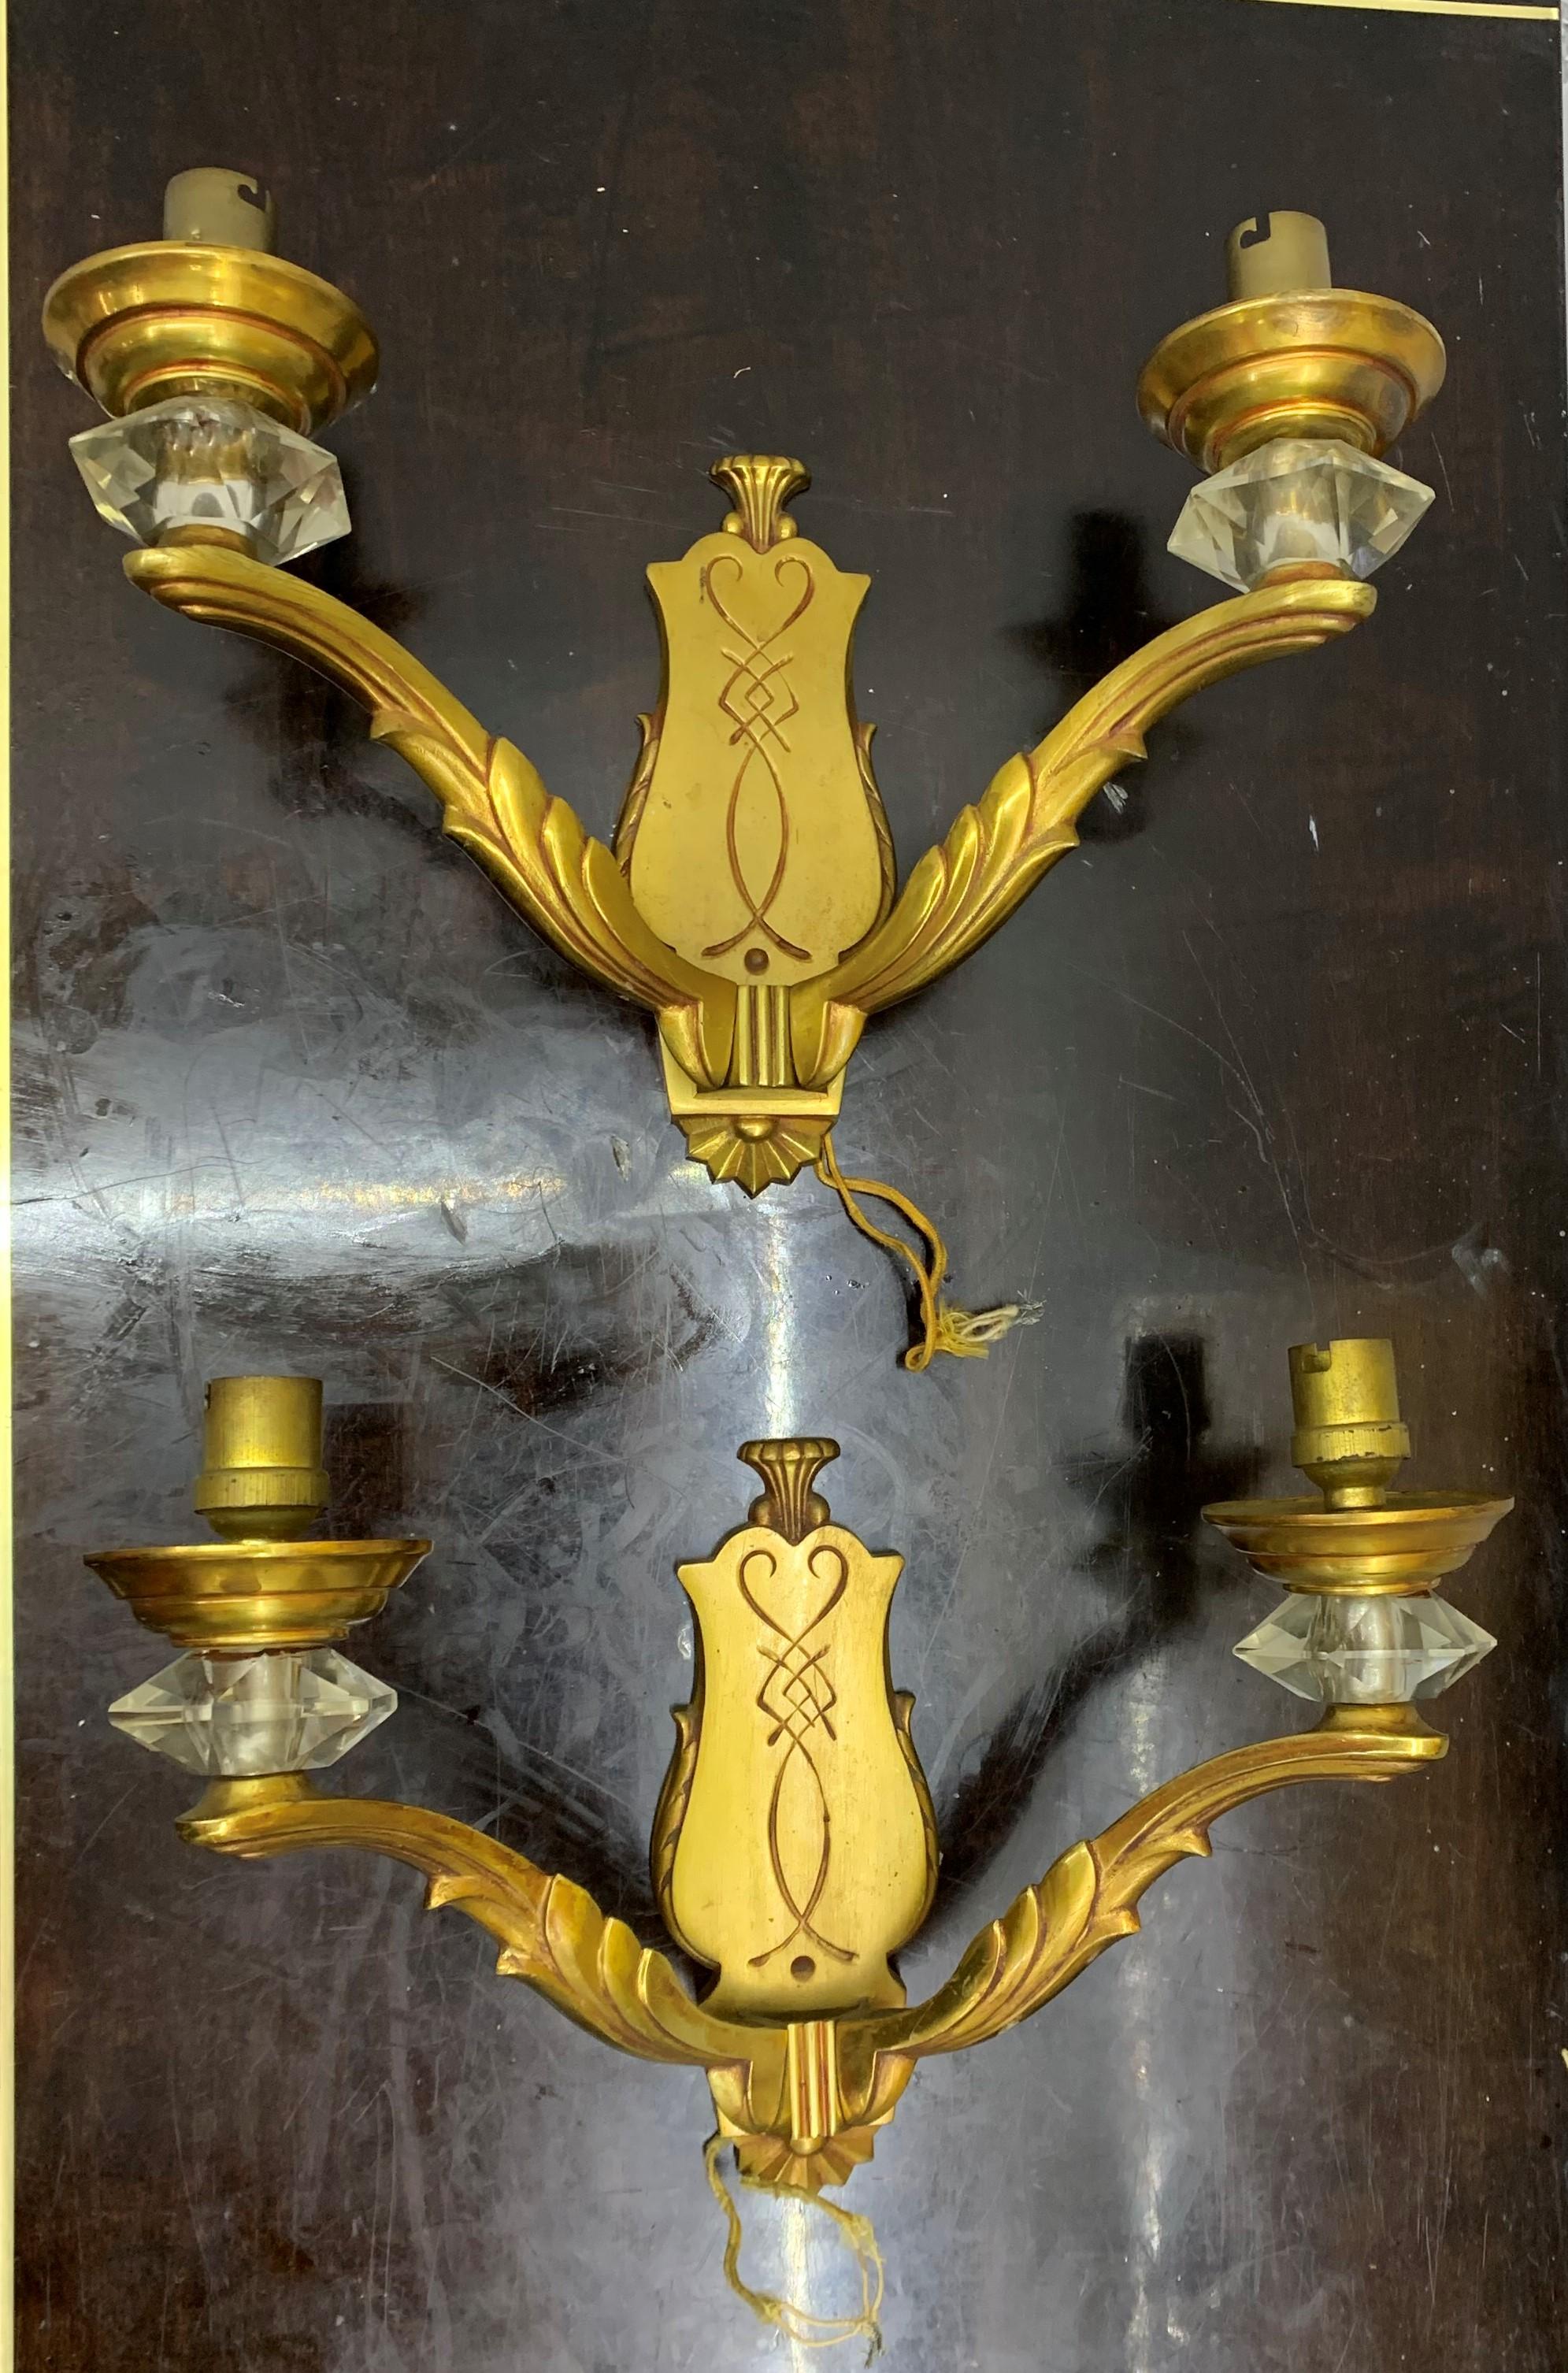 Schöne und originelle Art Deco Bronze- und Kristallleuchten, beide auf der Rückseite gestempelt G. L. (Georges Leleu) 71 (Modellnummer).
Sie können auf Wunsch des Kunden poliert werden und werden neu verkabelt, da sie derzeit die originalen